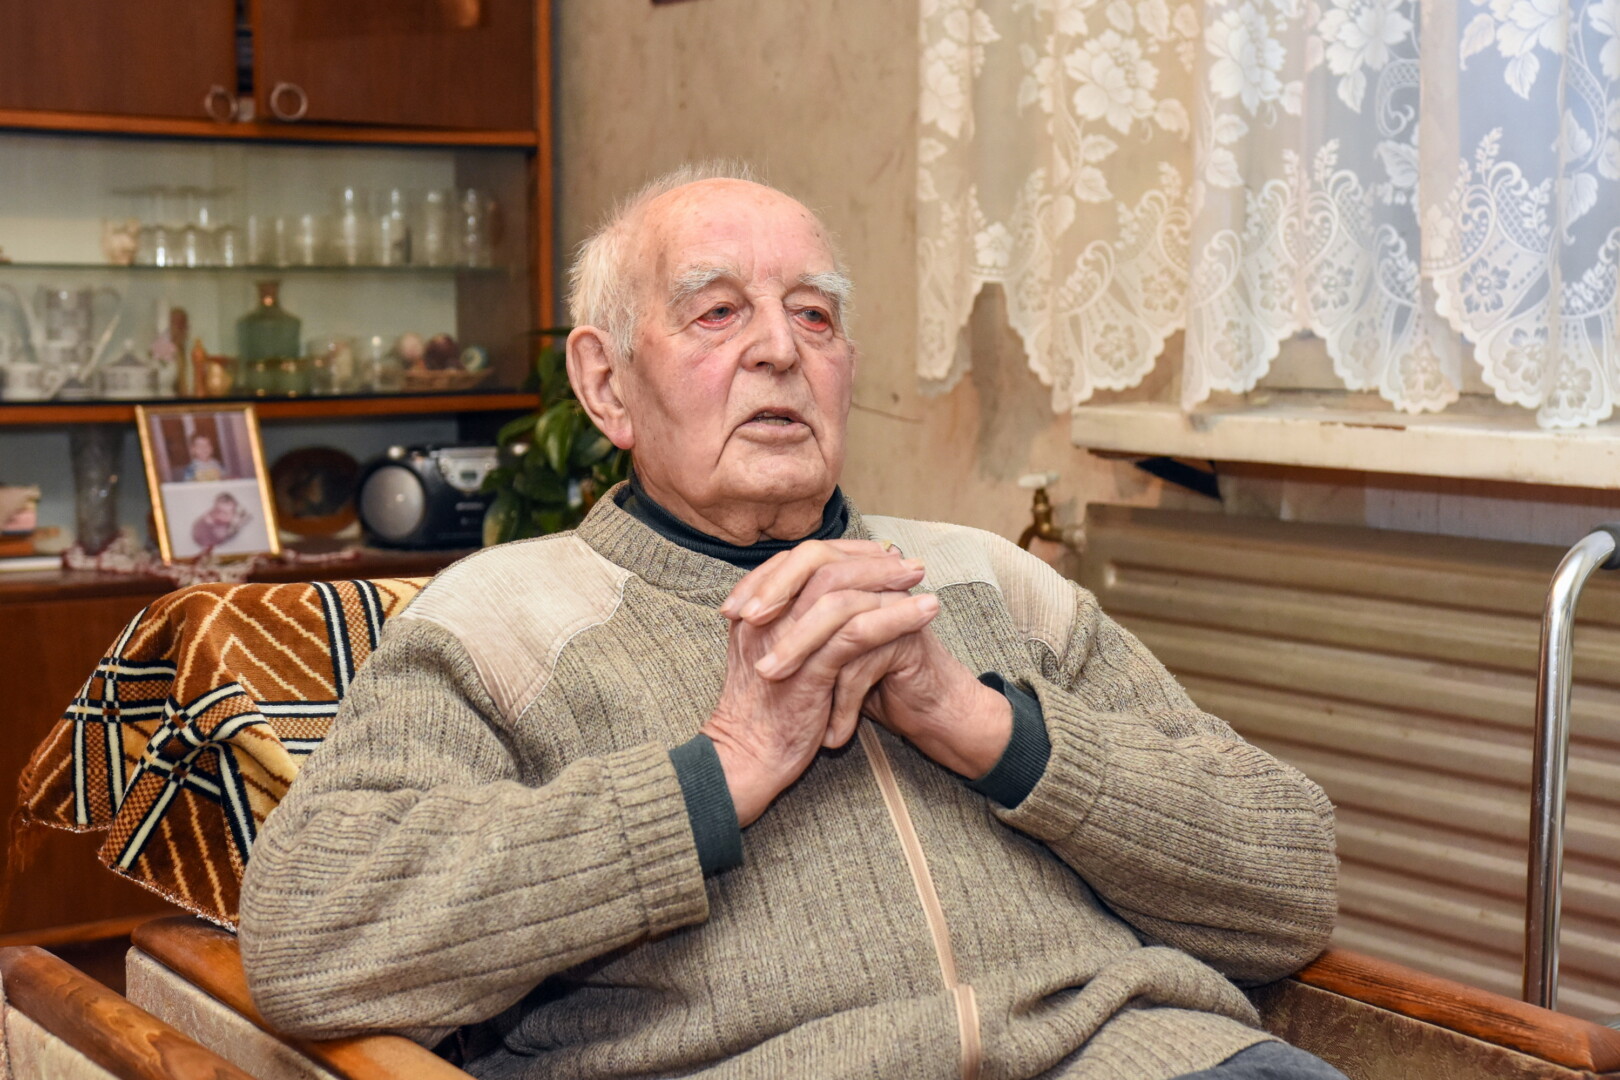 99-erių Juozo Karsokos kadaise puoselėta svajonė tapti mediku sudužo susidūrusi su sovietine realybe.